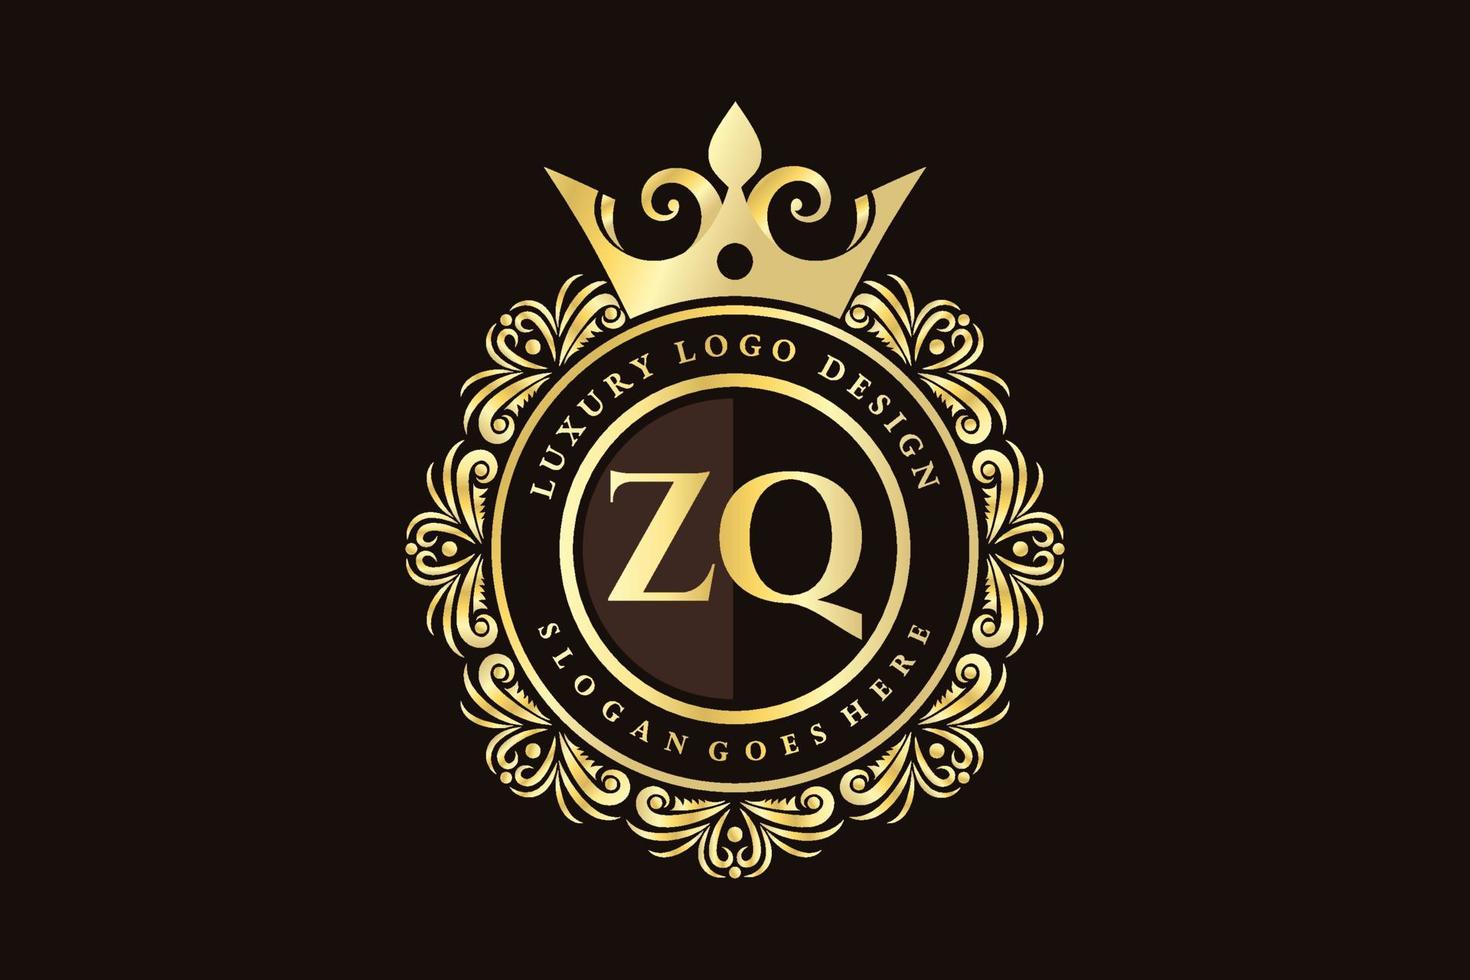 ZQ Initial Letter Gold calligraphic feminine floral hand drawn heraldic monogram antique vintage style luxury logo design Premium Vector